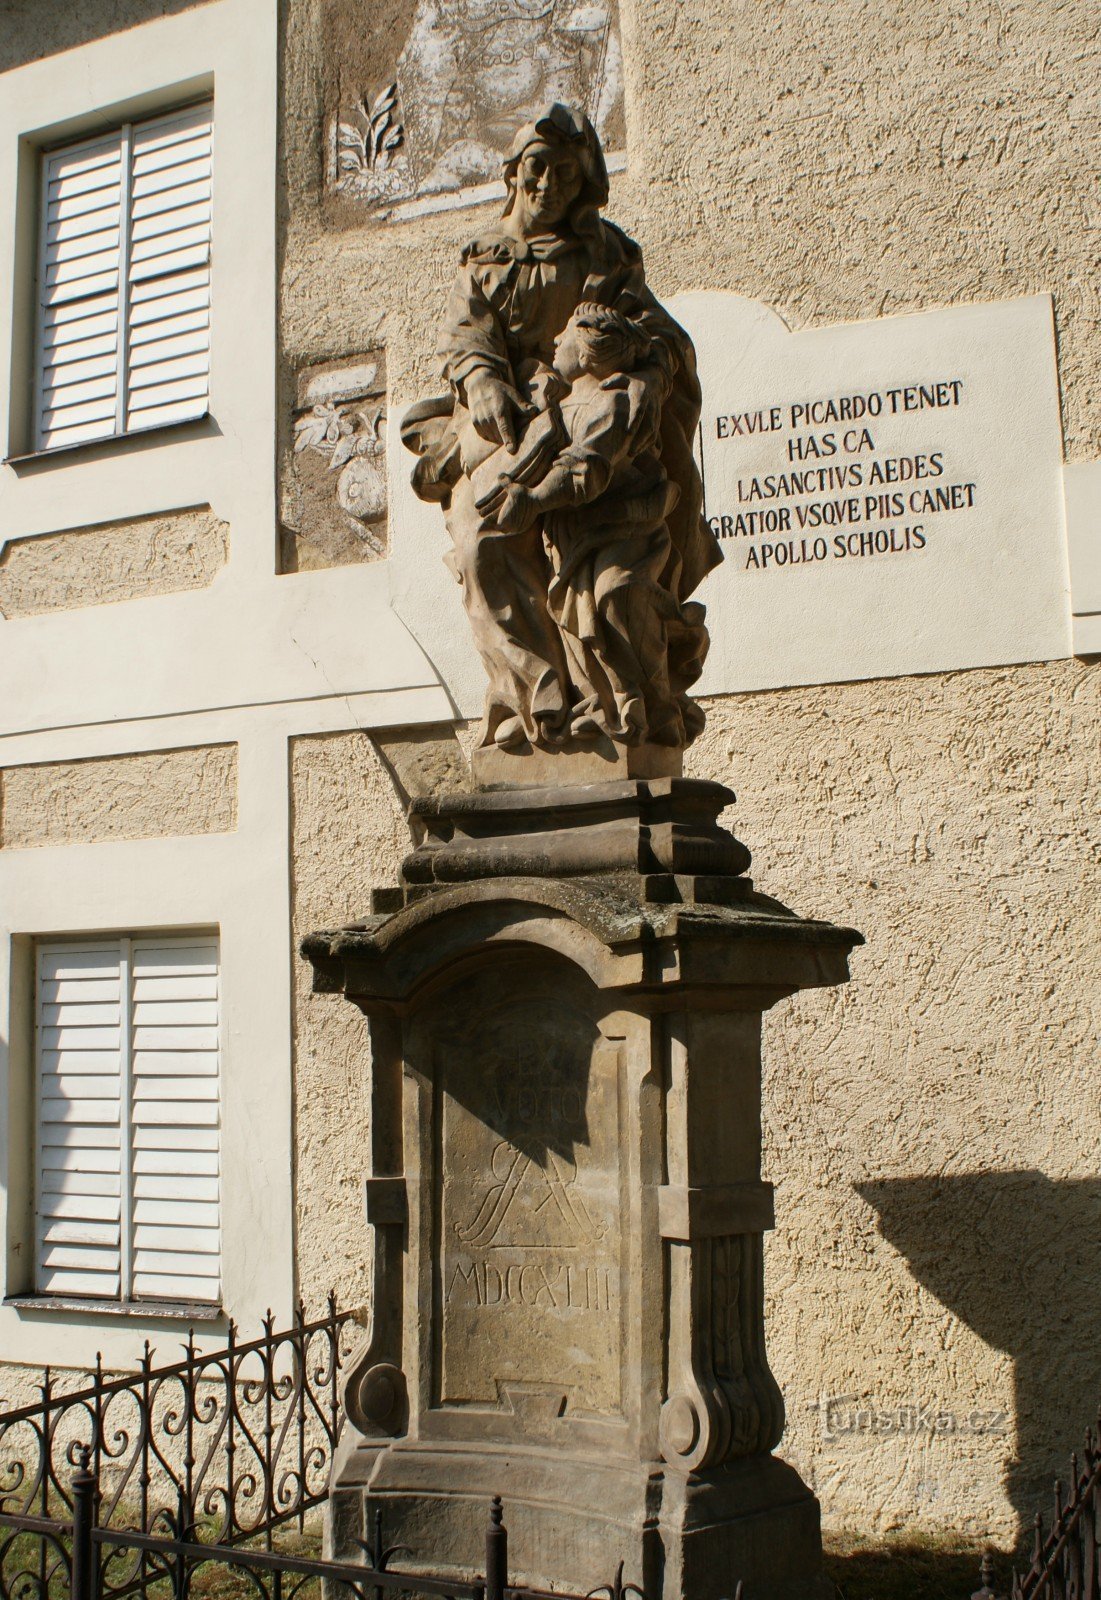 Mladá Boleslav - staty av St. Anne